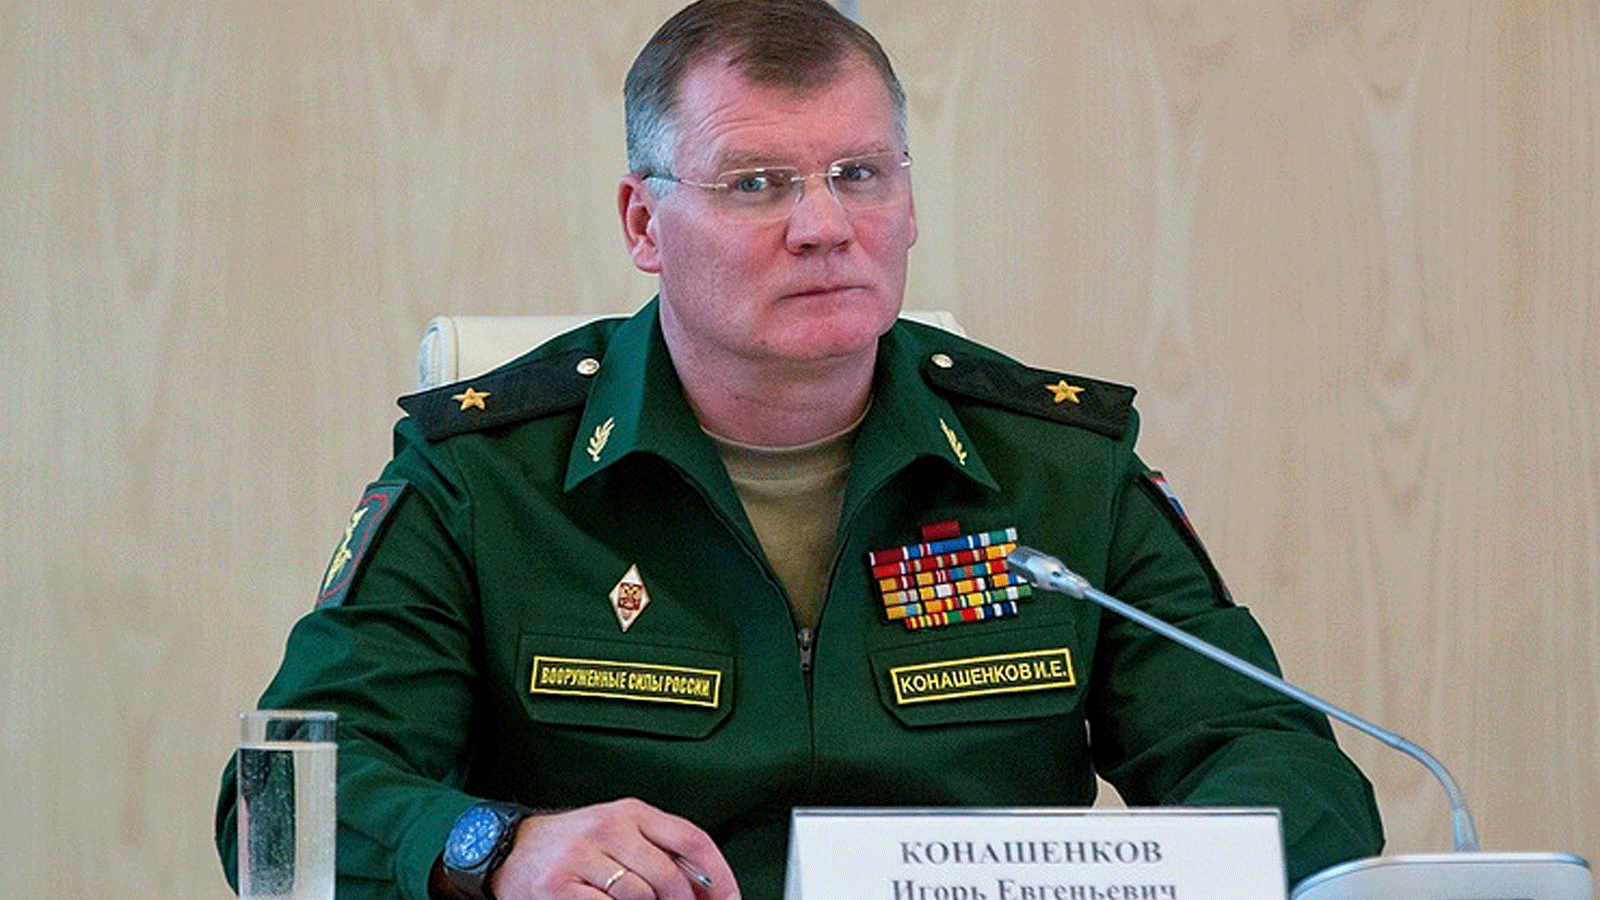 الناطق باسم وزارة الدفاع الروسية إيغور كوناتشينكوف